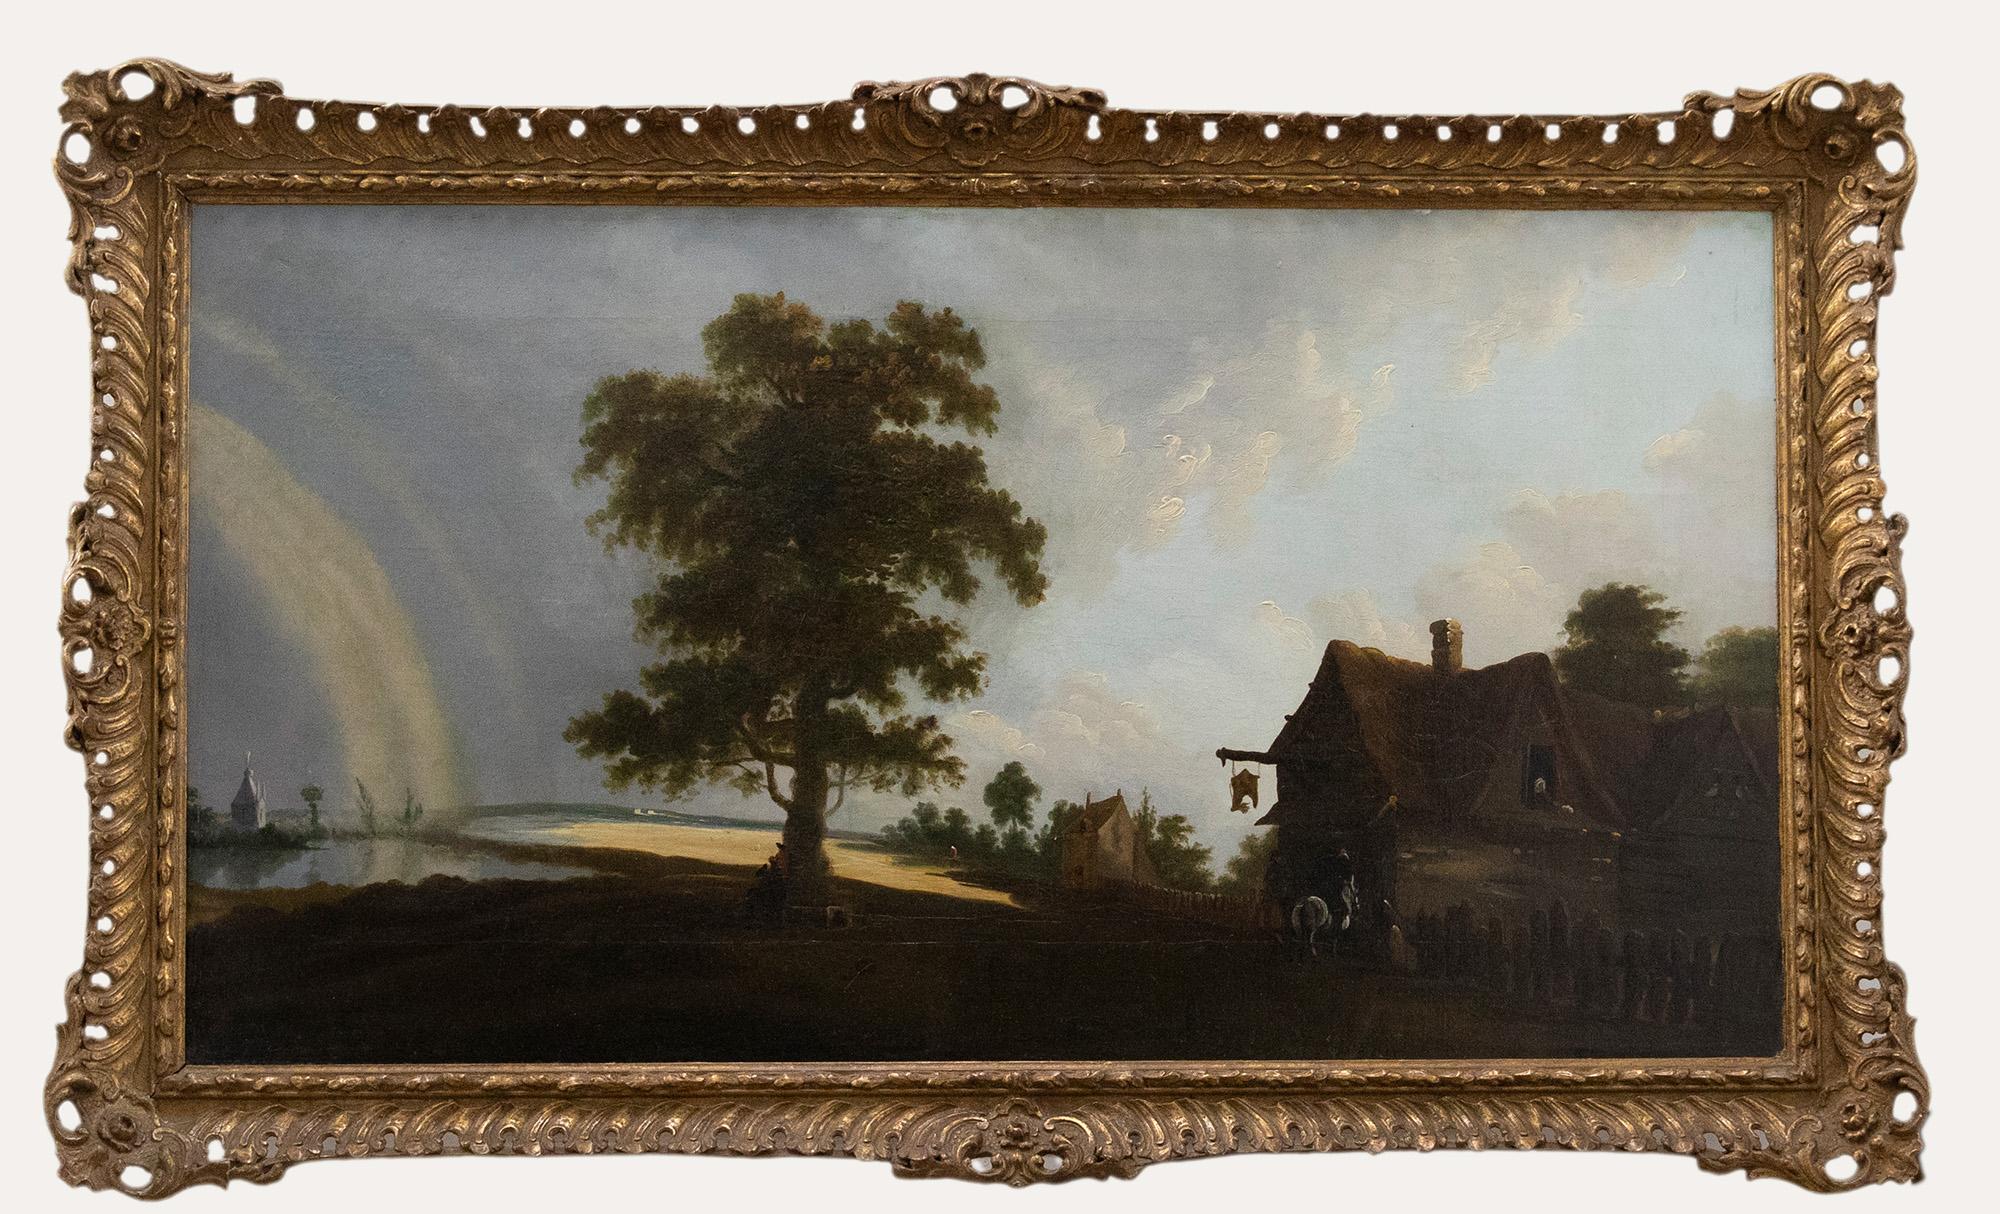 Eine reizvolle Ölstudie der Englischen Schule, die zwei reitende Figuren bei der Ankunft in einem Gasthaus zeigt. Die weite Landschaft im Hintergrund erstreckt sich über eine Flussmündung. Ein Regenbogen spannt sich über die linke Seite der Szene.